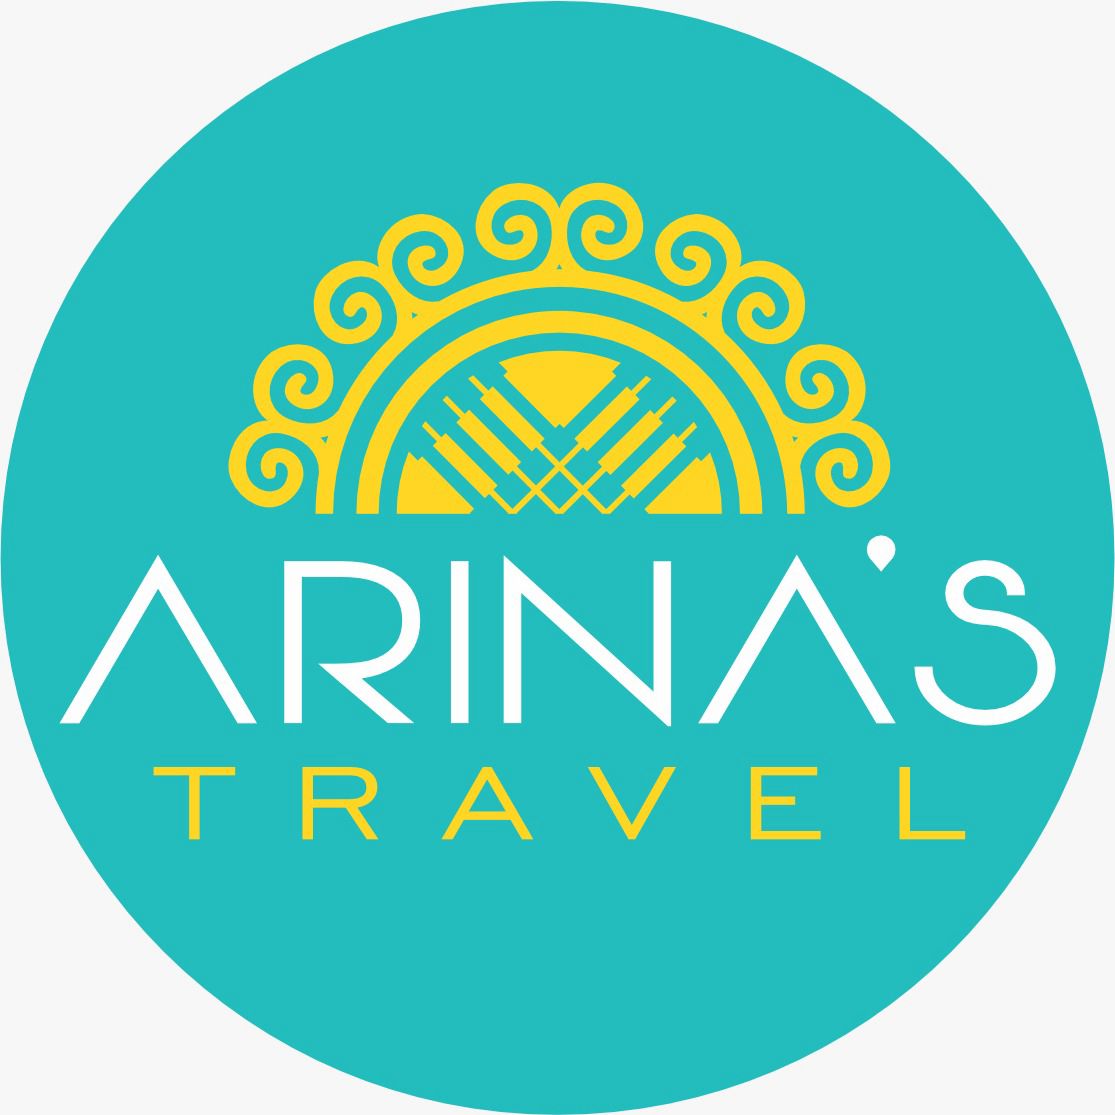 ARINA’S TRAVEL